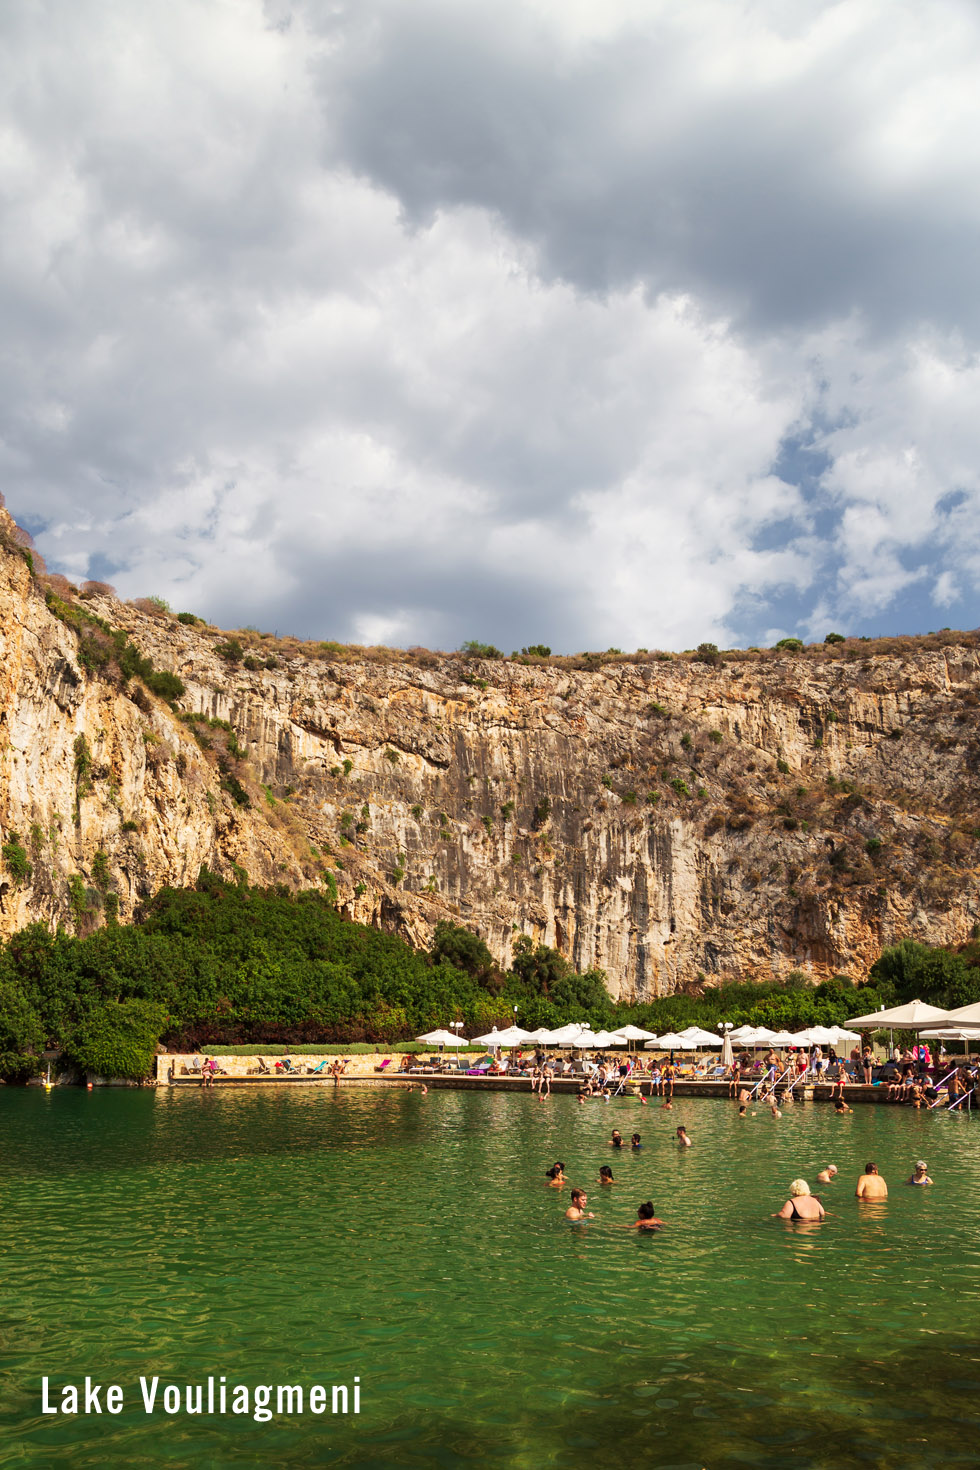 Lake Vouliagmeni in Greece